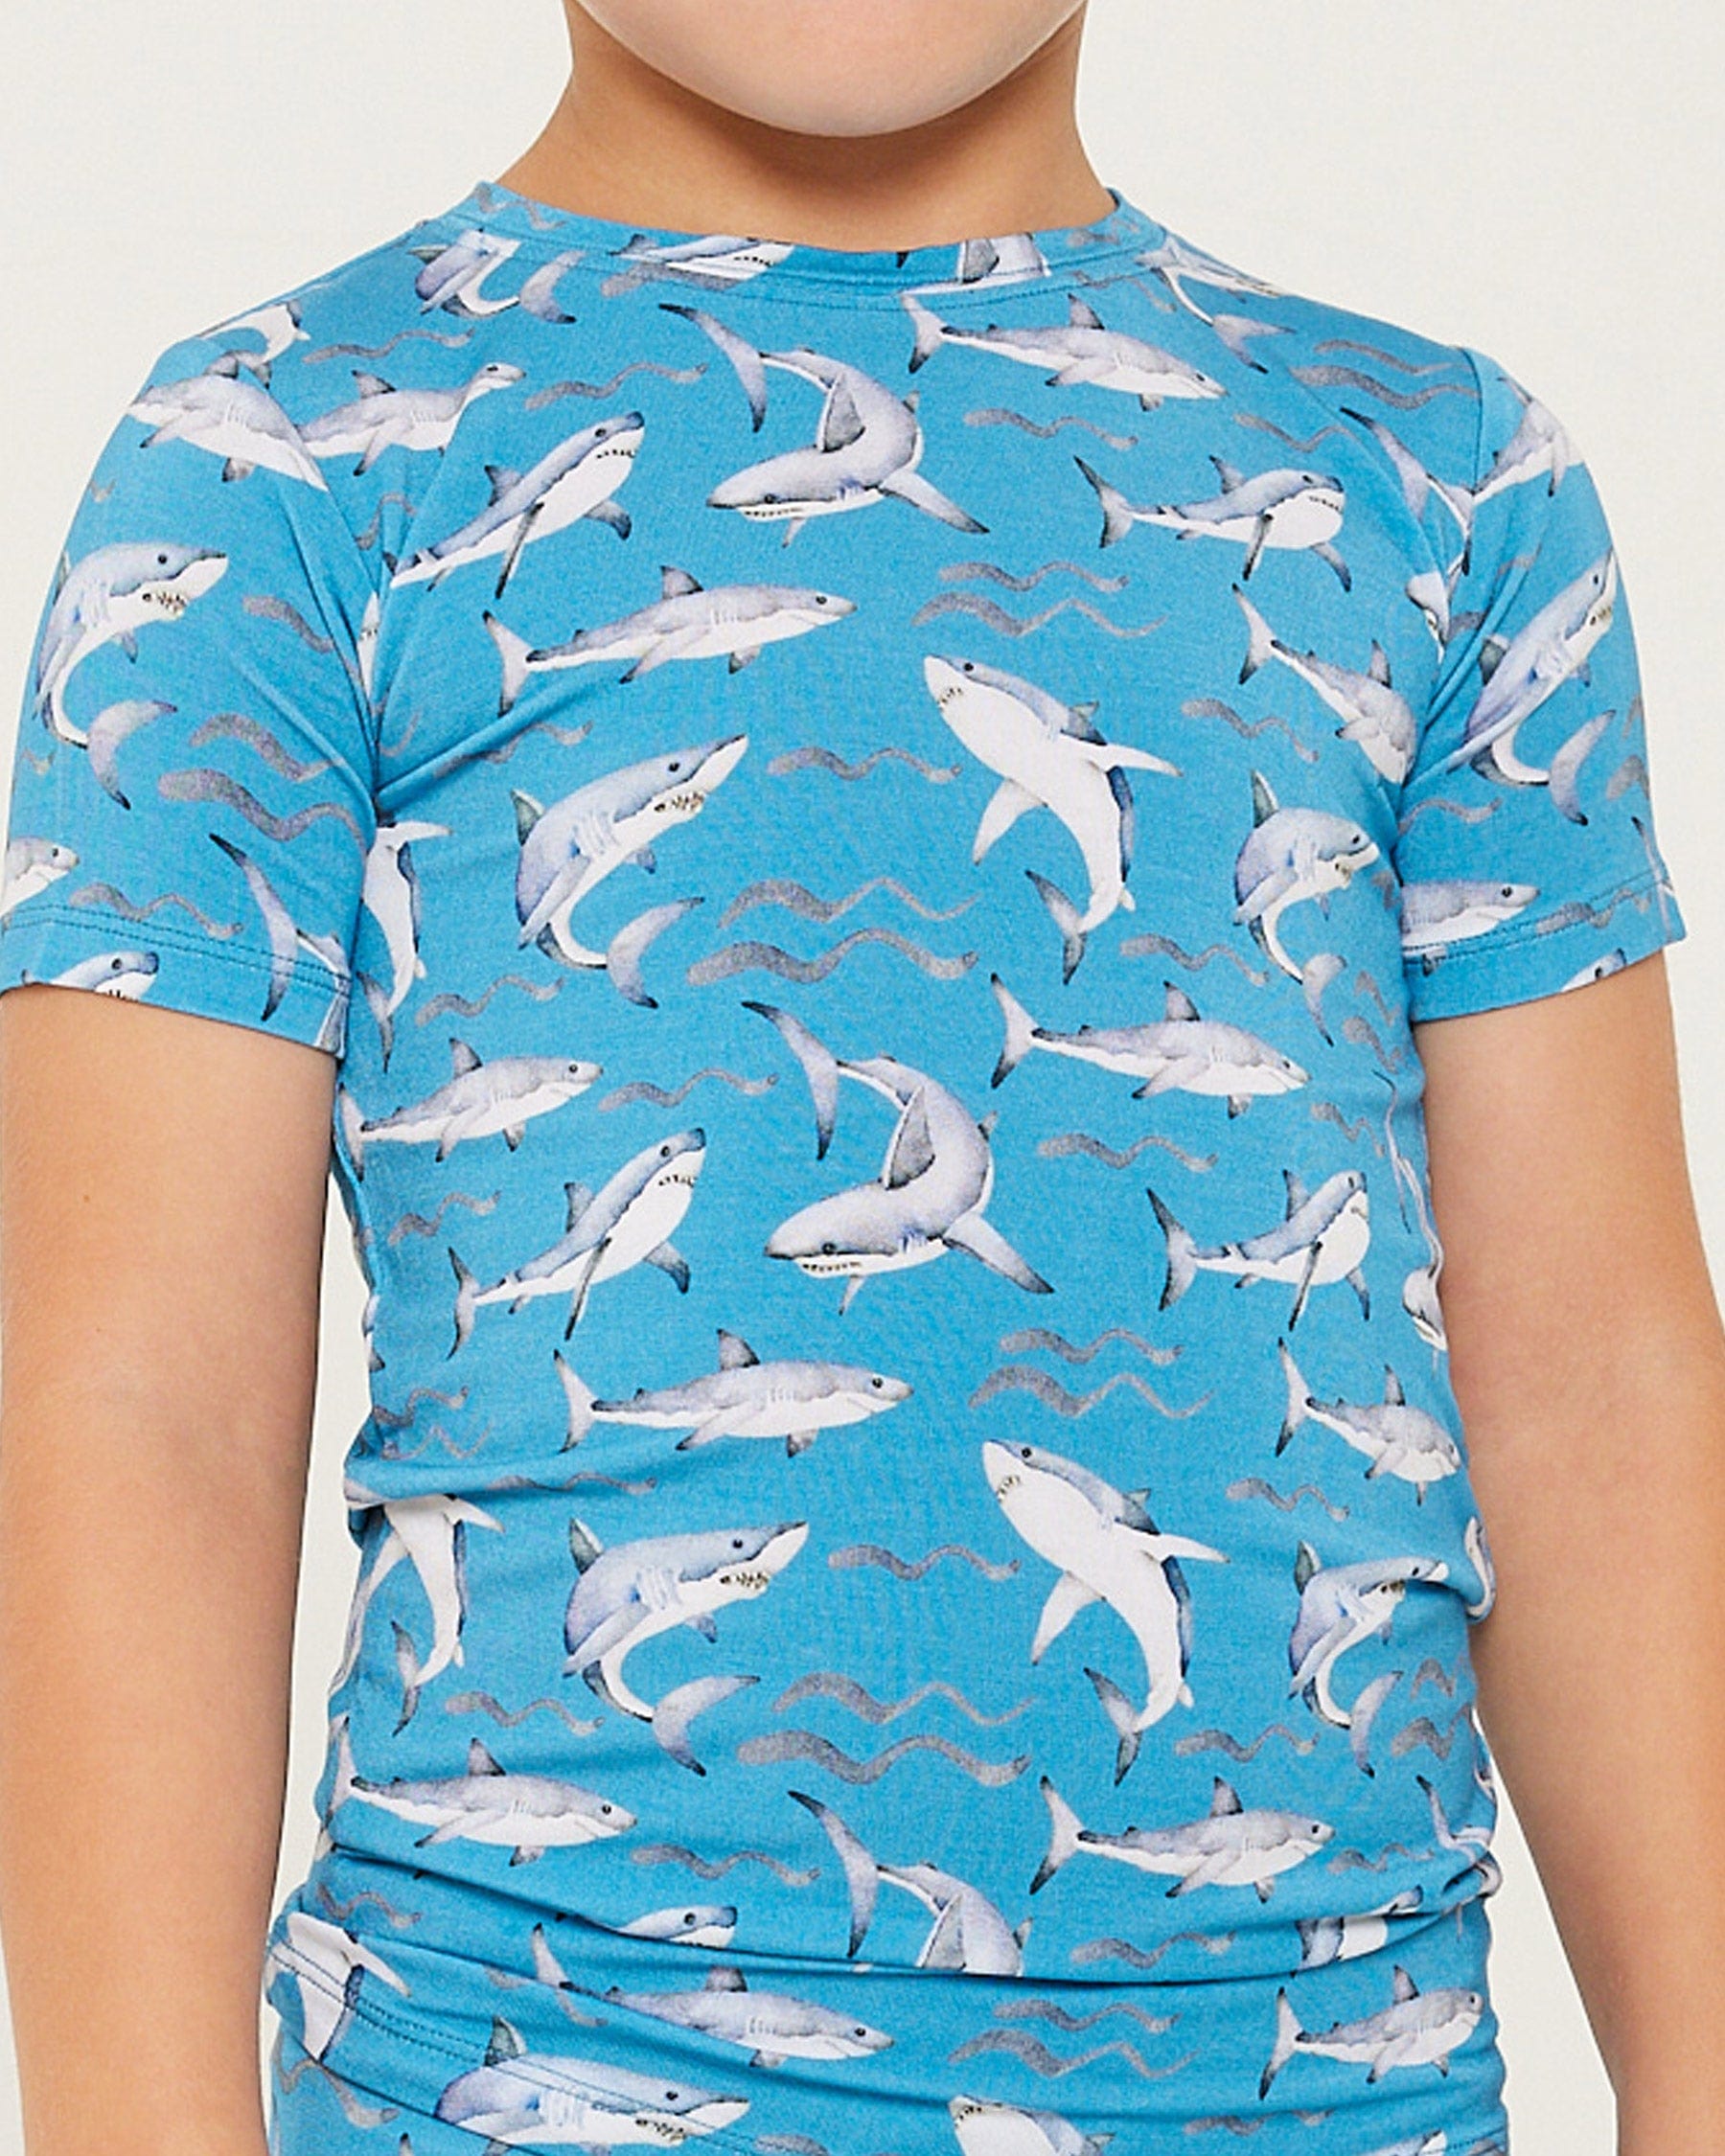 Shark Pajama Set